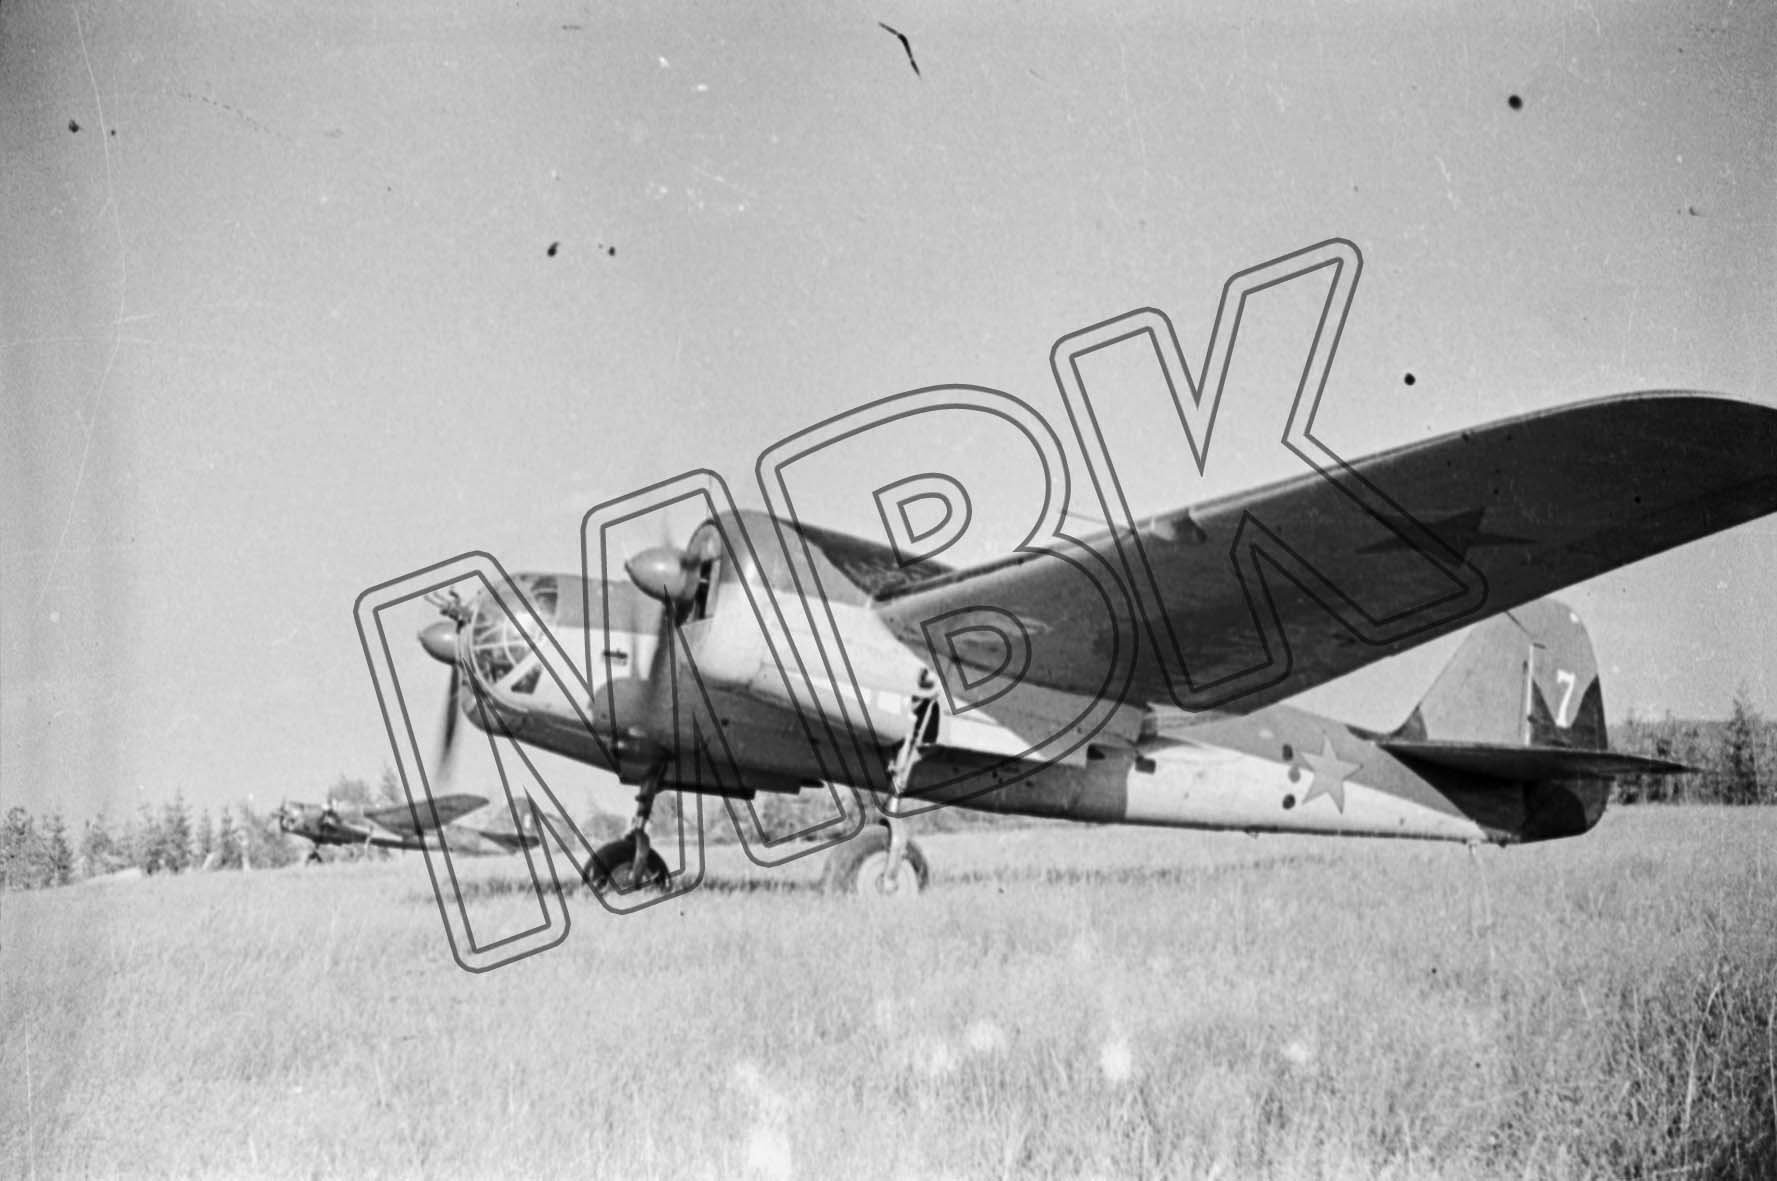 Fotografie: Sowjetische Bomber, Ort unbekannt, vermutlich Sommer 1941 (Museum Berlin-Karlshorst RR-P)